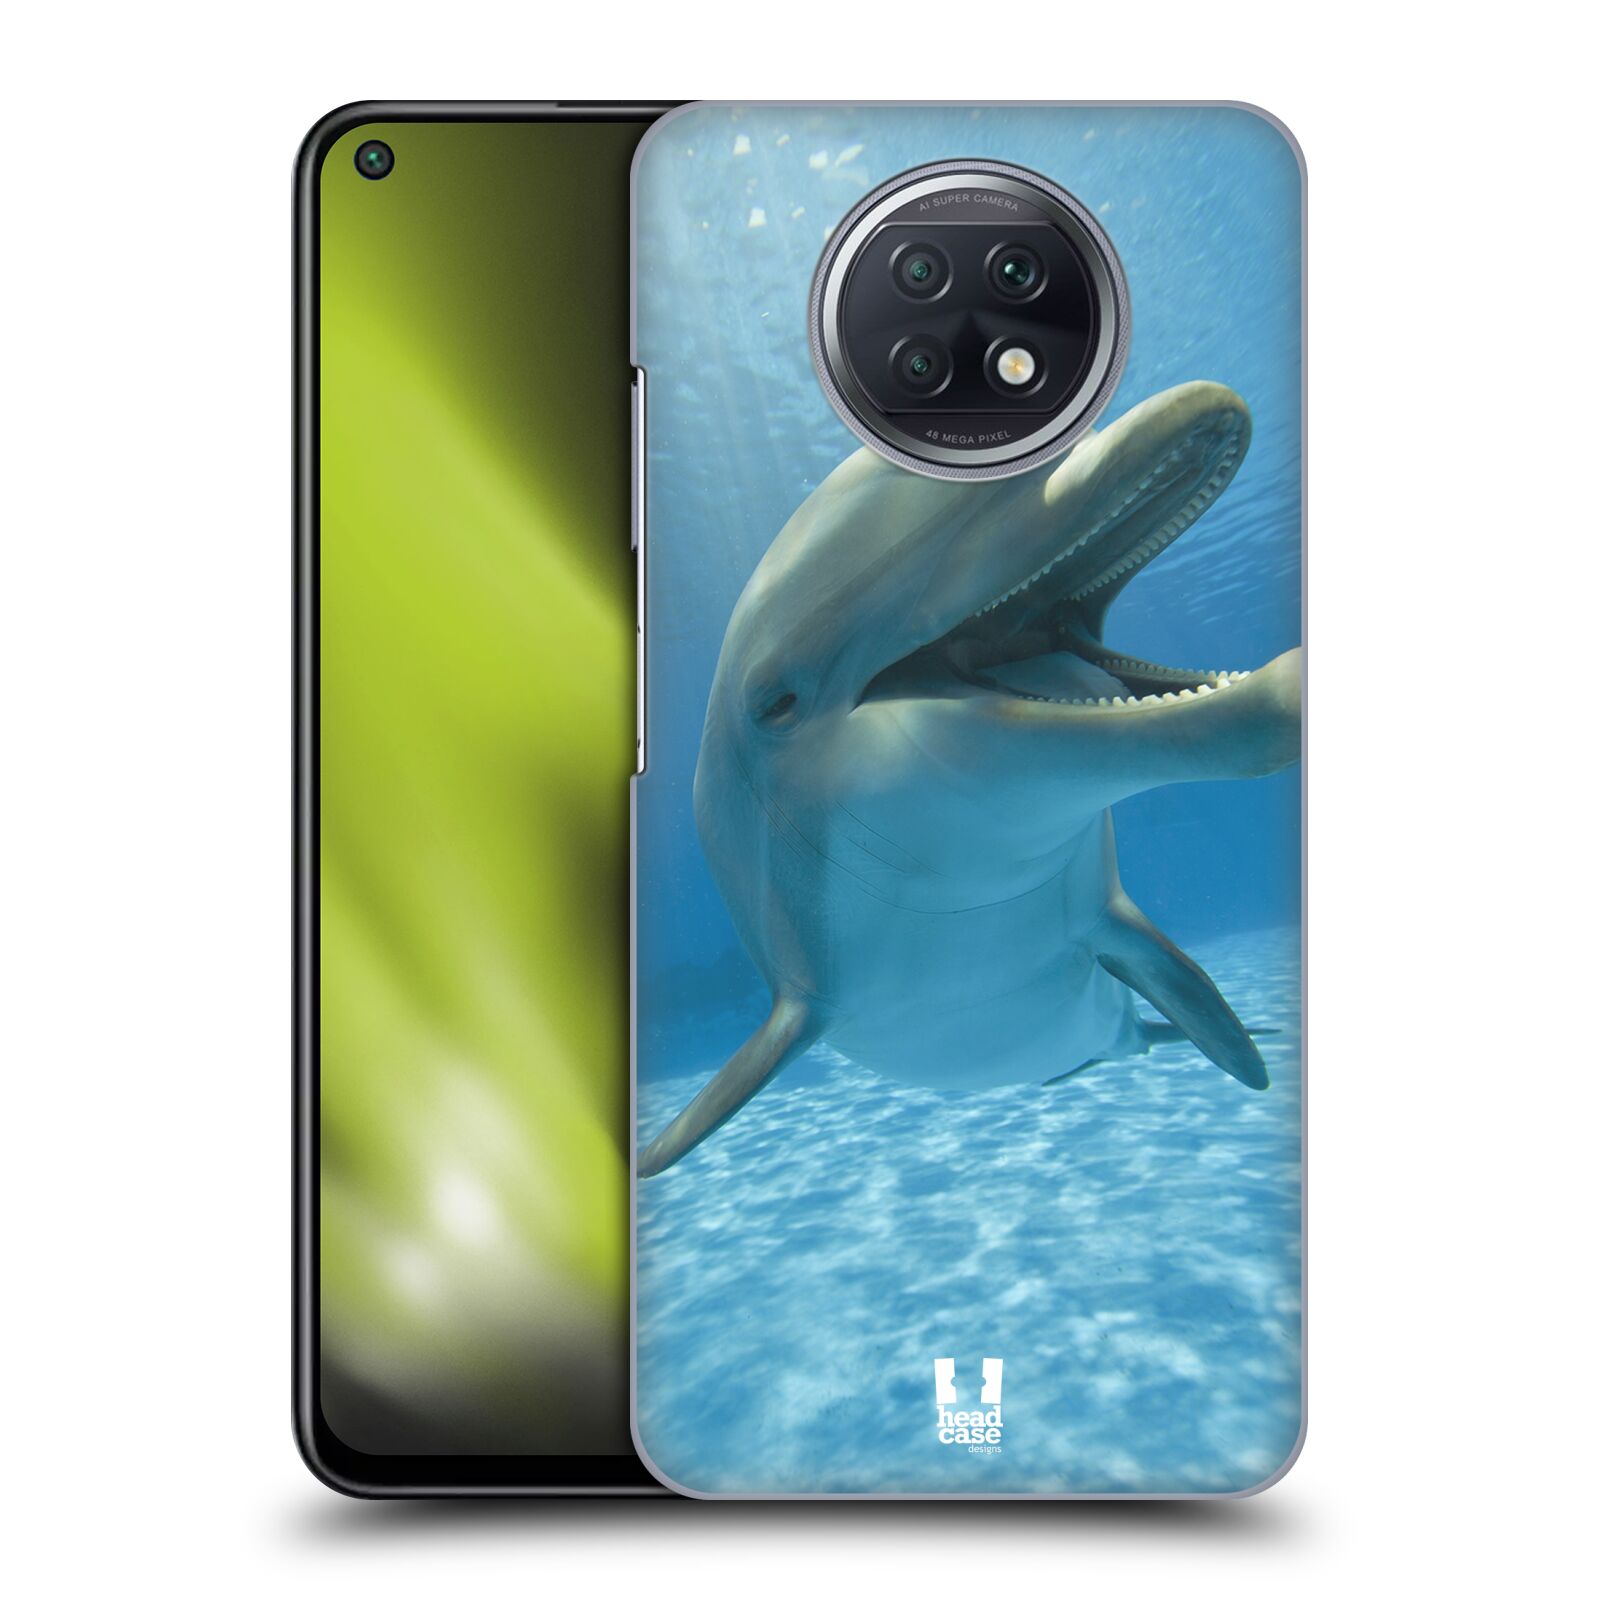 Zadní obal pro mobil Xiaomi Redmi Note 9T - HEAD CASE - Svět zvířat delfín v moři